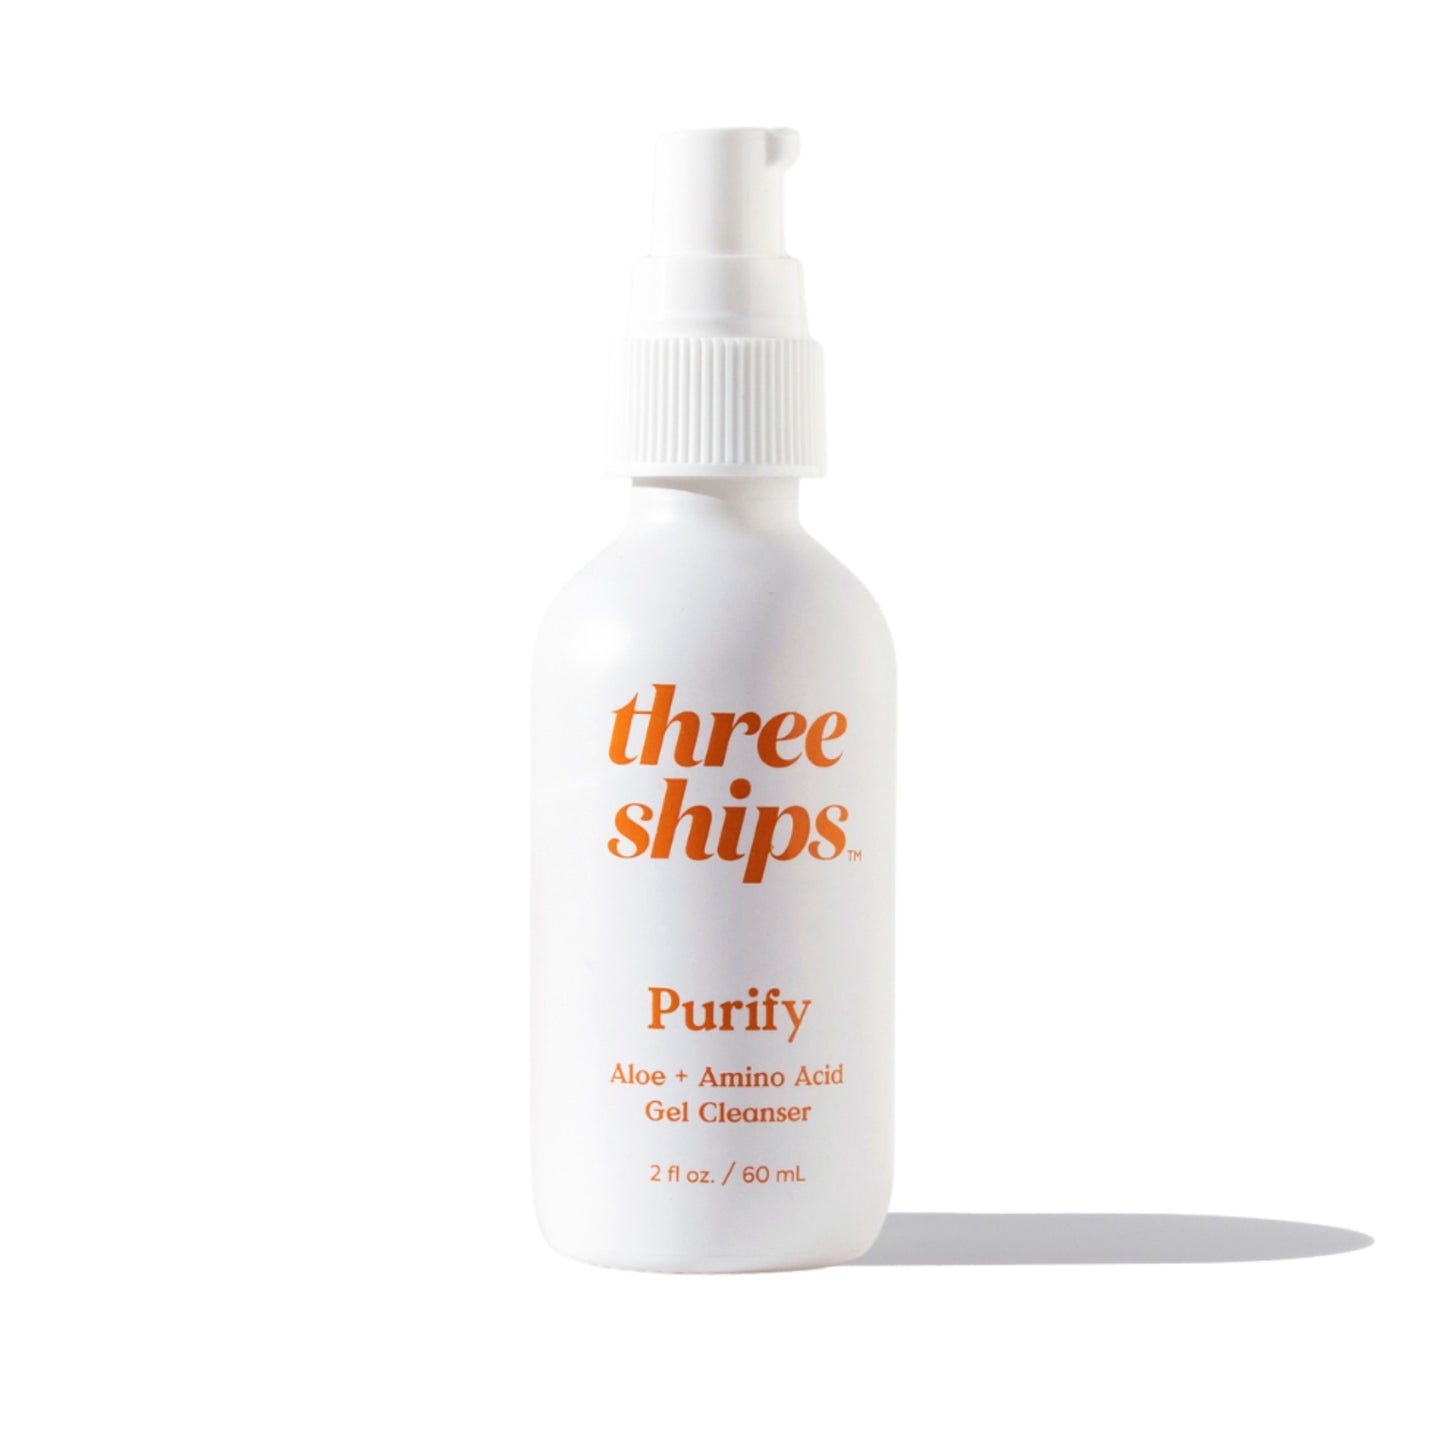 THREE SHIPS Purify Aloe Amino Acid Cleanser